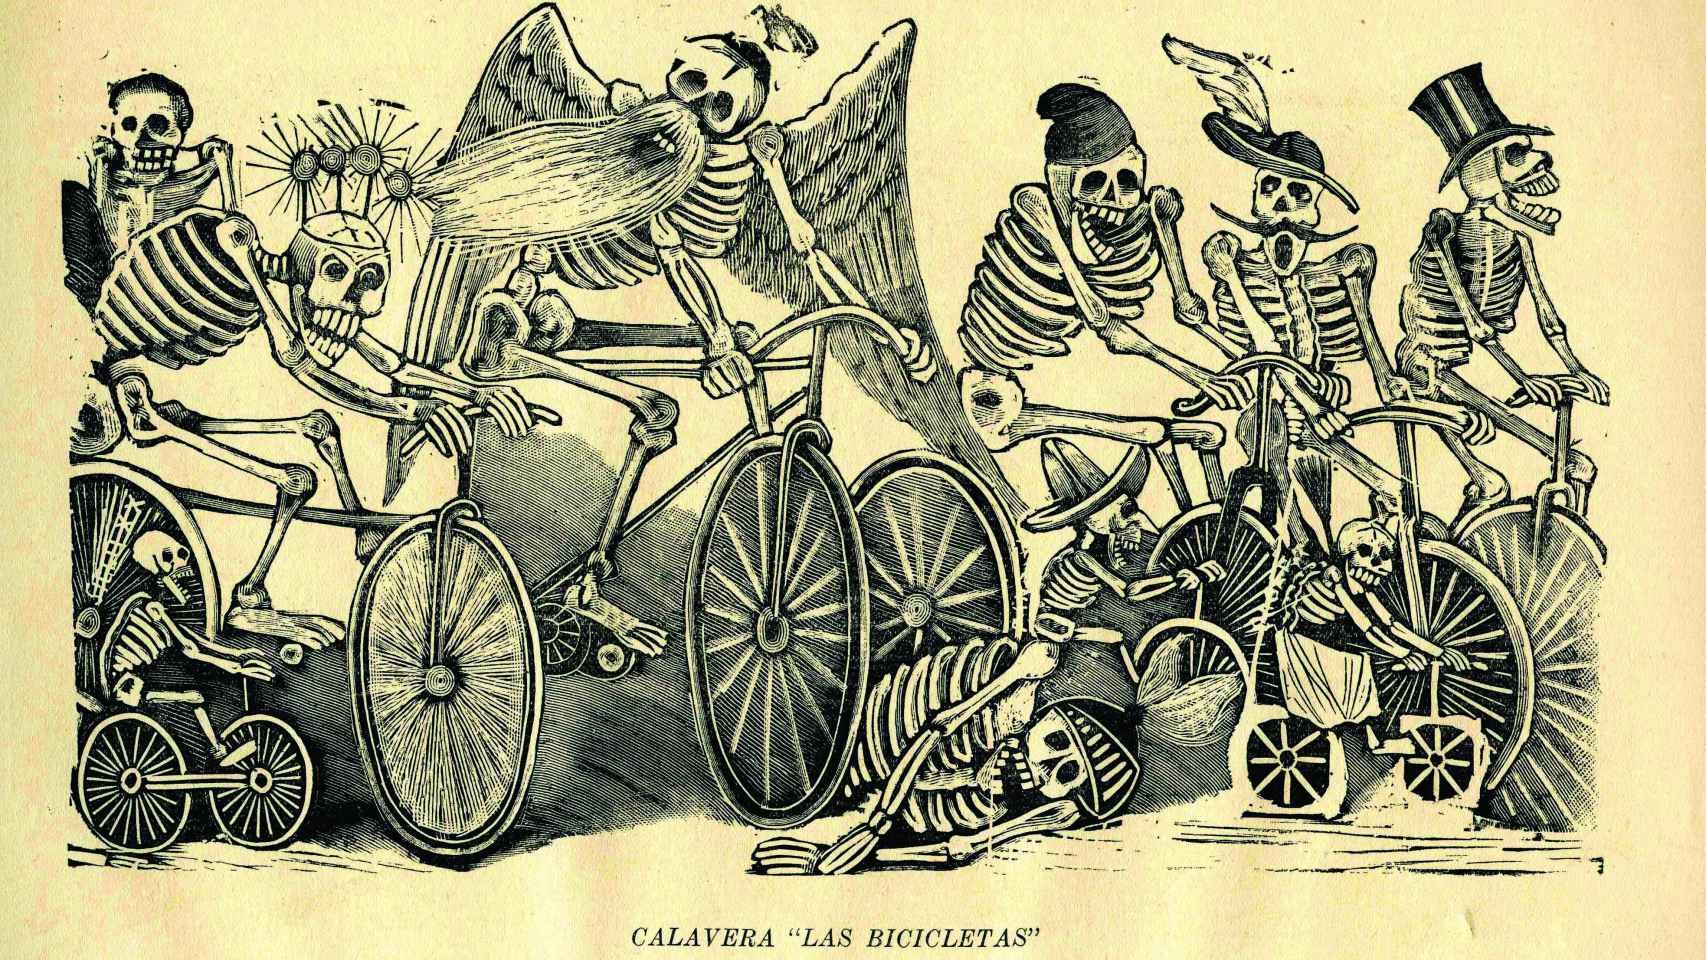 José Guadalupe Posada: 'Calavera las bicicletas', h. 1900